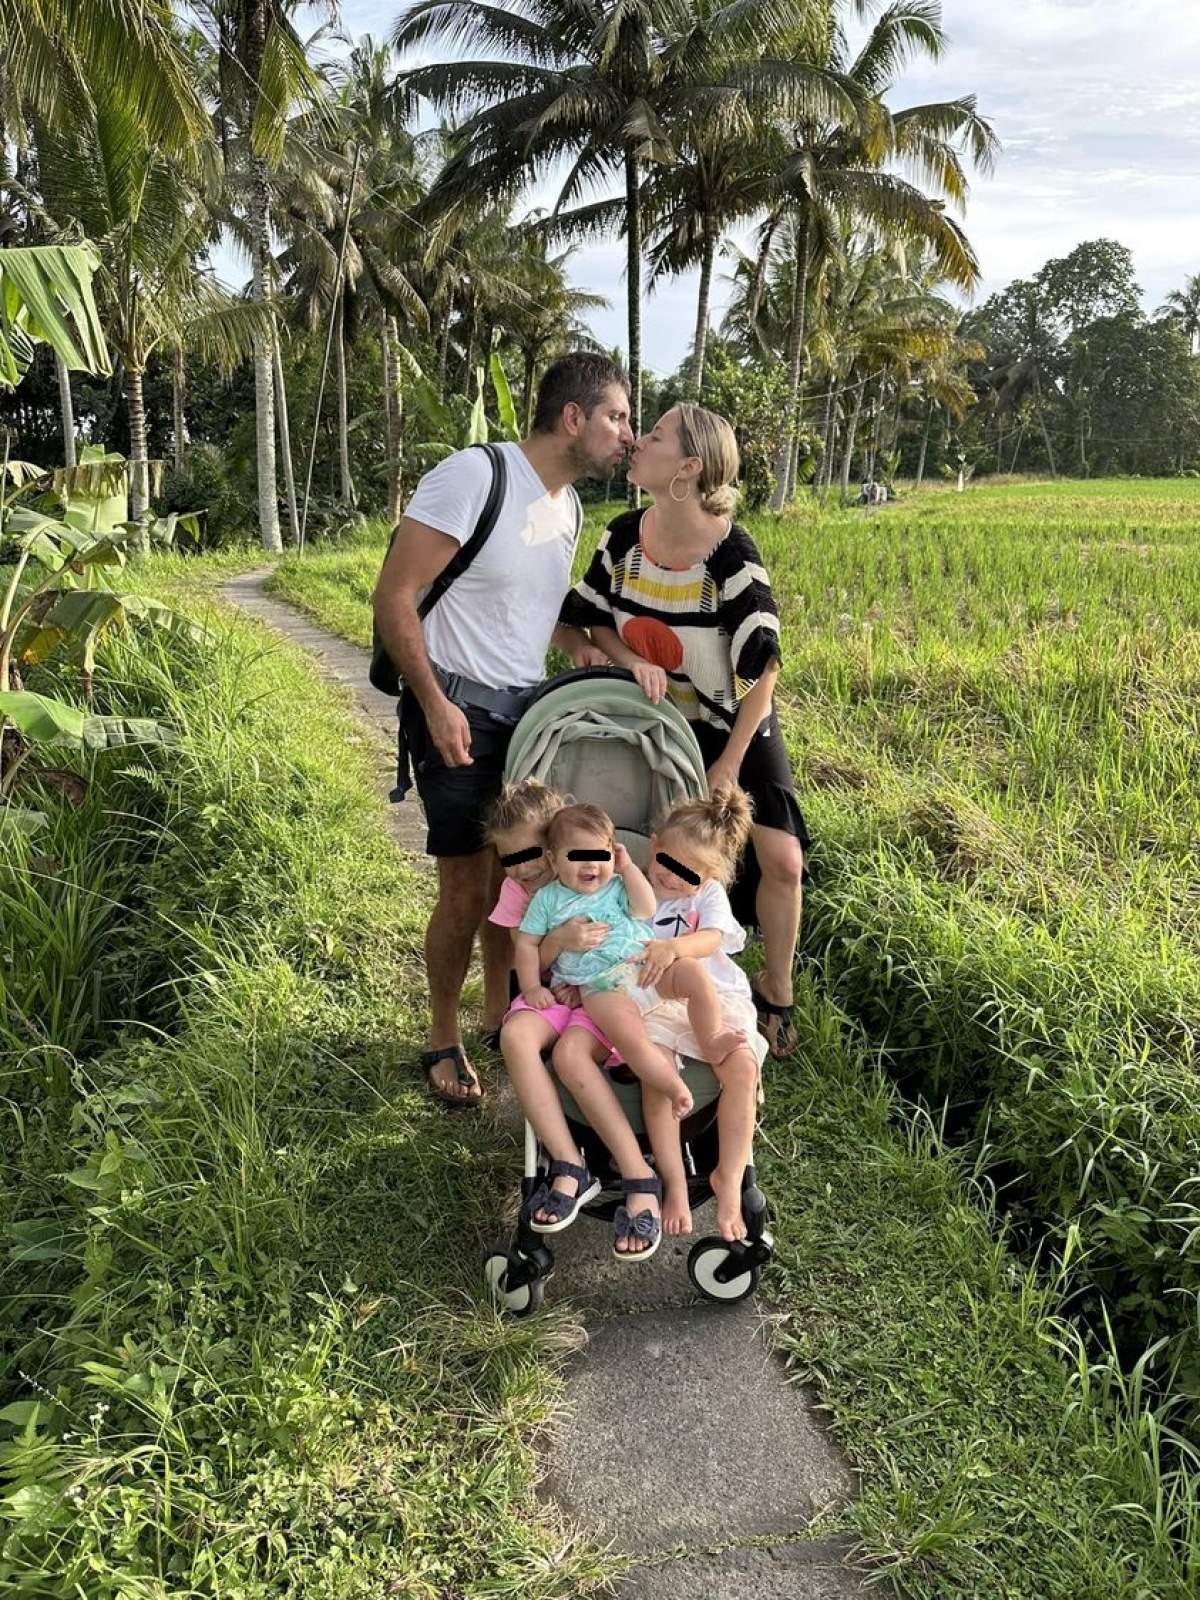 Laura Cosoi, despre călătoriile cu trei copii. Cum se descurcă vedeta și soțul ei cu micuțele, la mii de km distanță: ”După ce ne tăvălim de câteva ori prin foc...” / FOTO